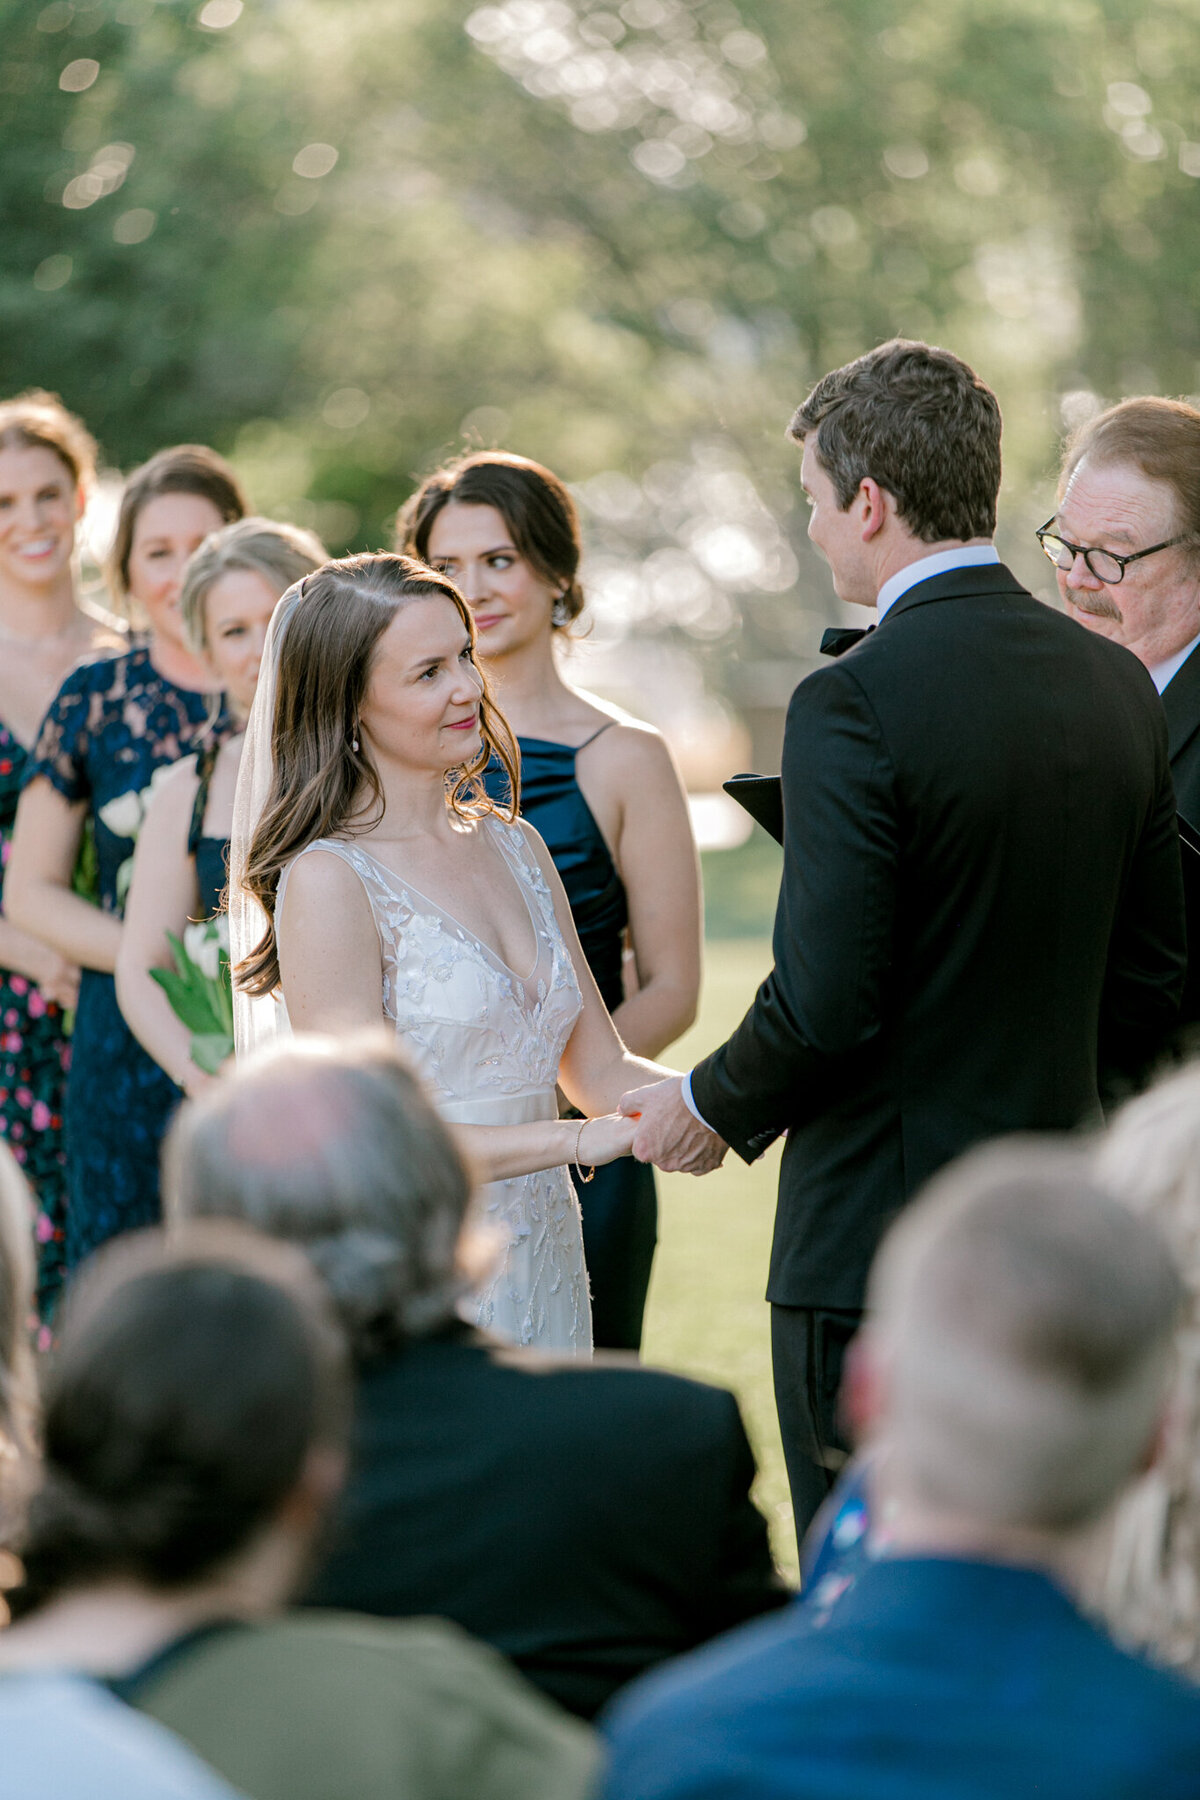 Gena & Matt's Wedding at the Dallas Arboretum | Dallas Wedding Photographer | Sami Kathryn Photography-151